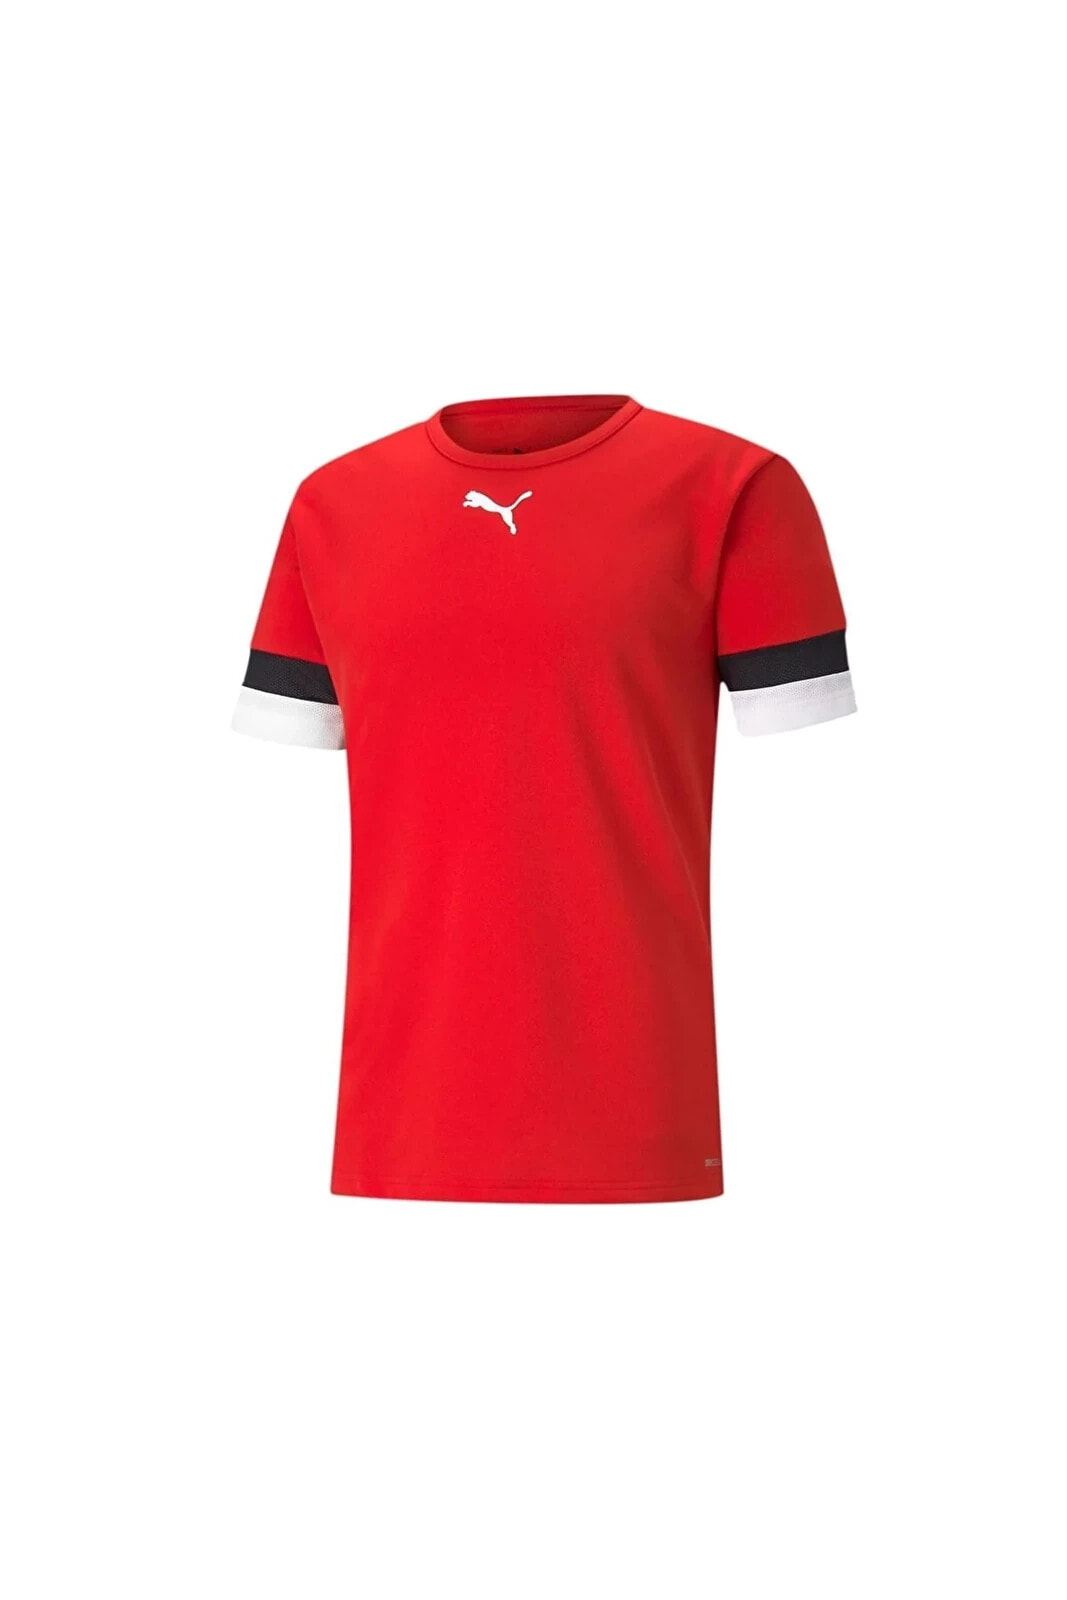 Teamrise Jersey Erkek Futbol Forması 70493201 Kırmızı